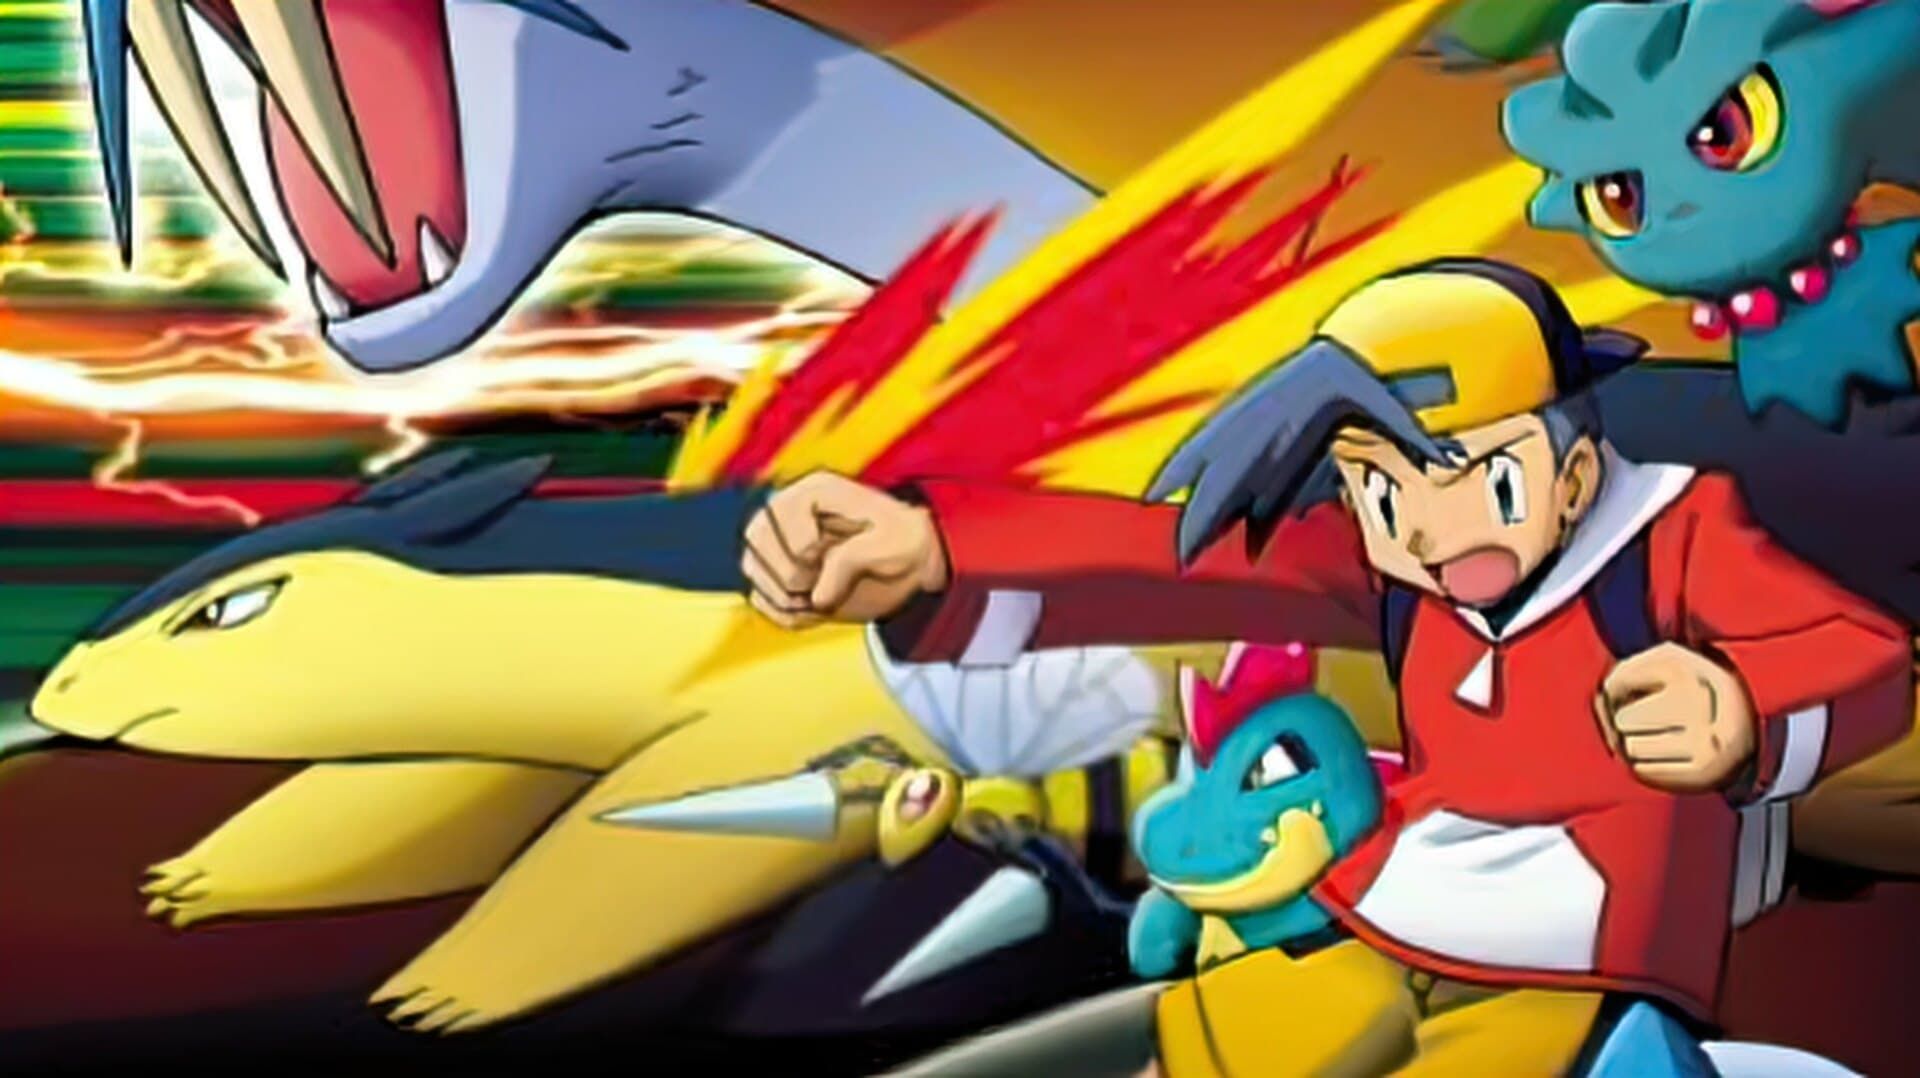 Cubierta de Pokémon: ¡La leyenda del trueno!